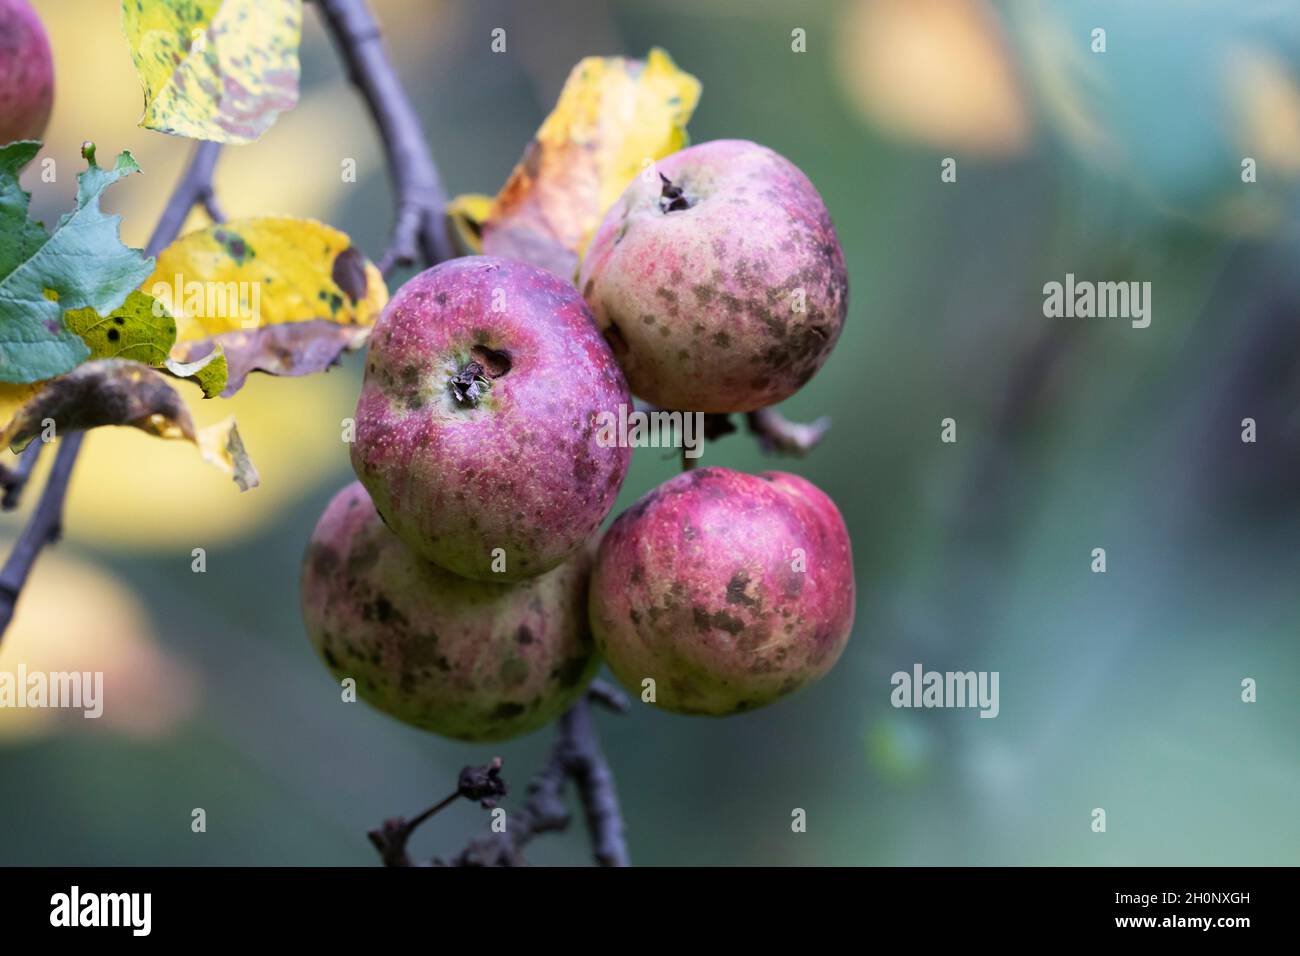 Sooty blotch (Schizothyrium pomi) y Apple Scab (Venturia inaequalis) en Manzanas, Otoño Foto de stock